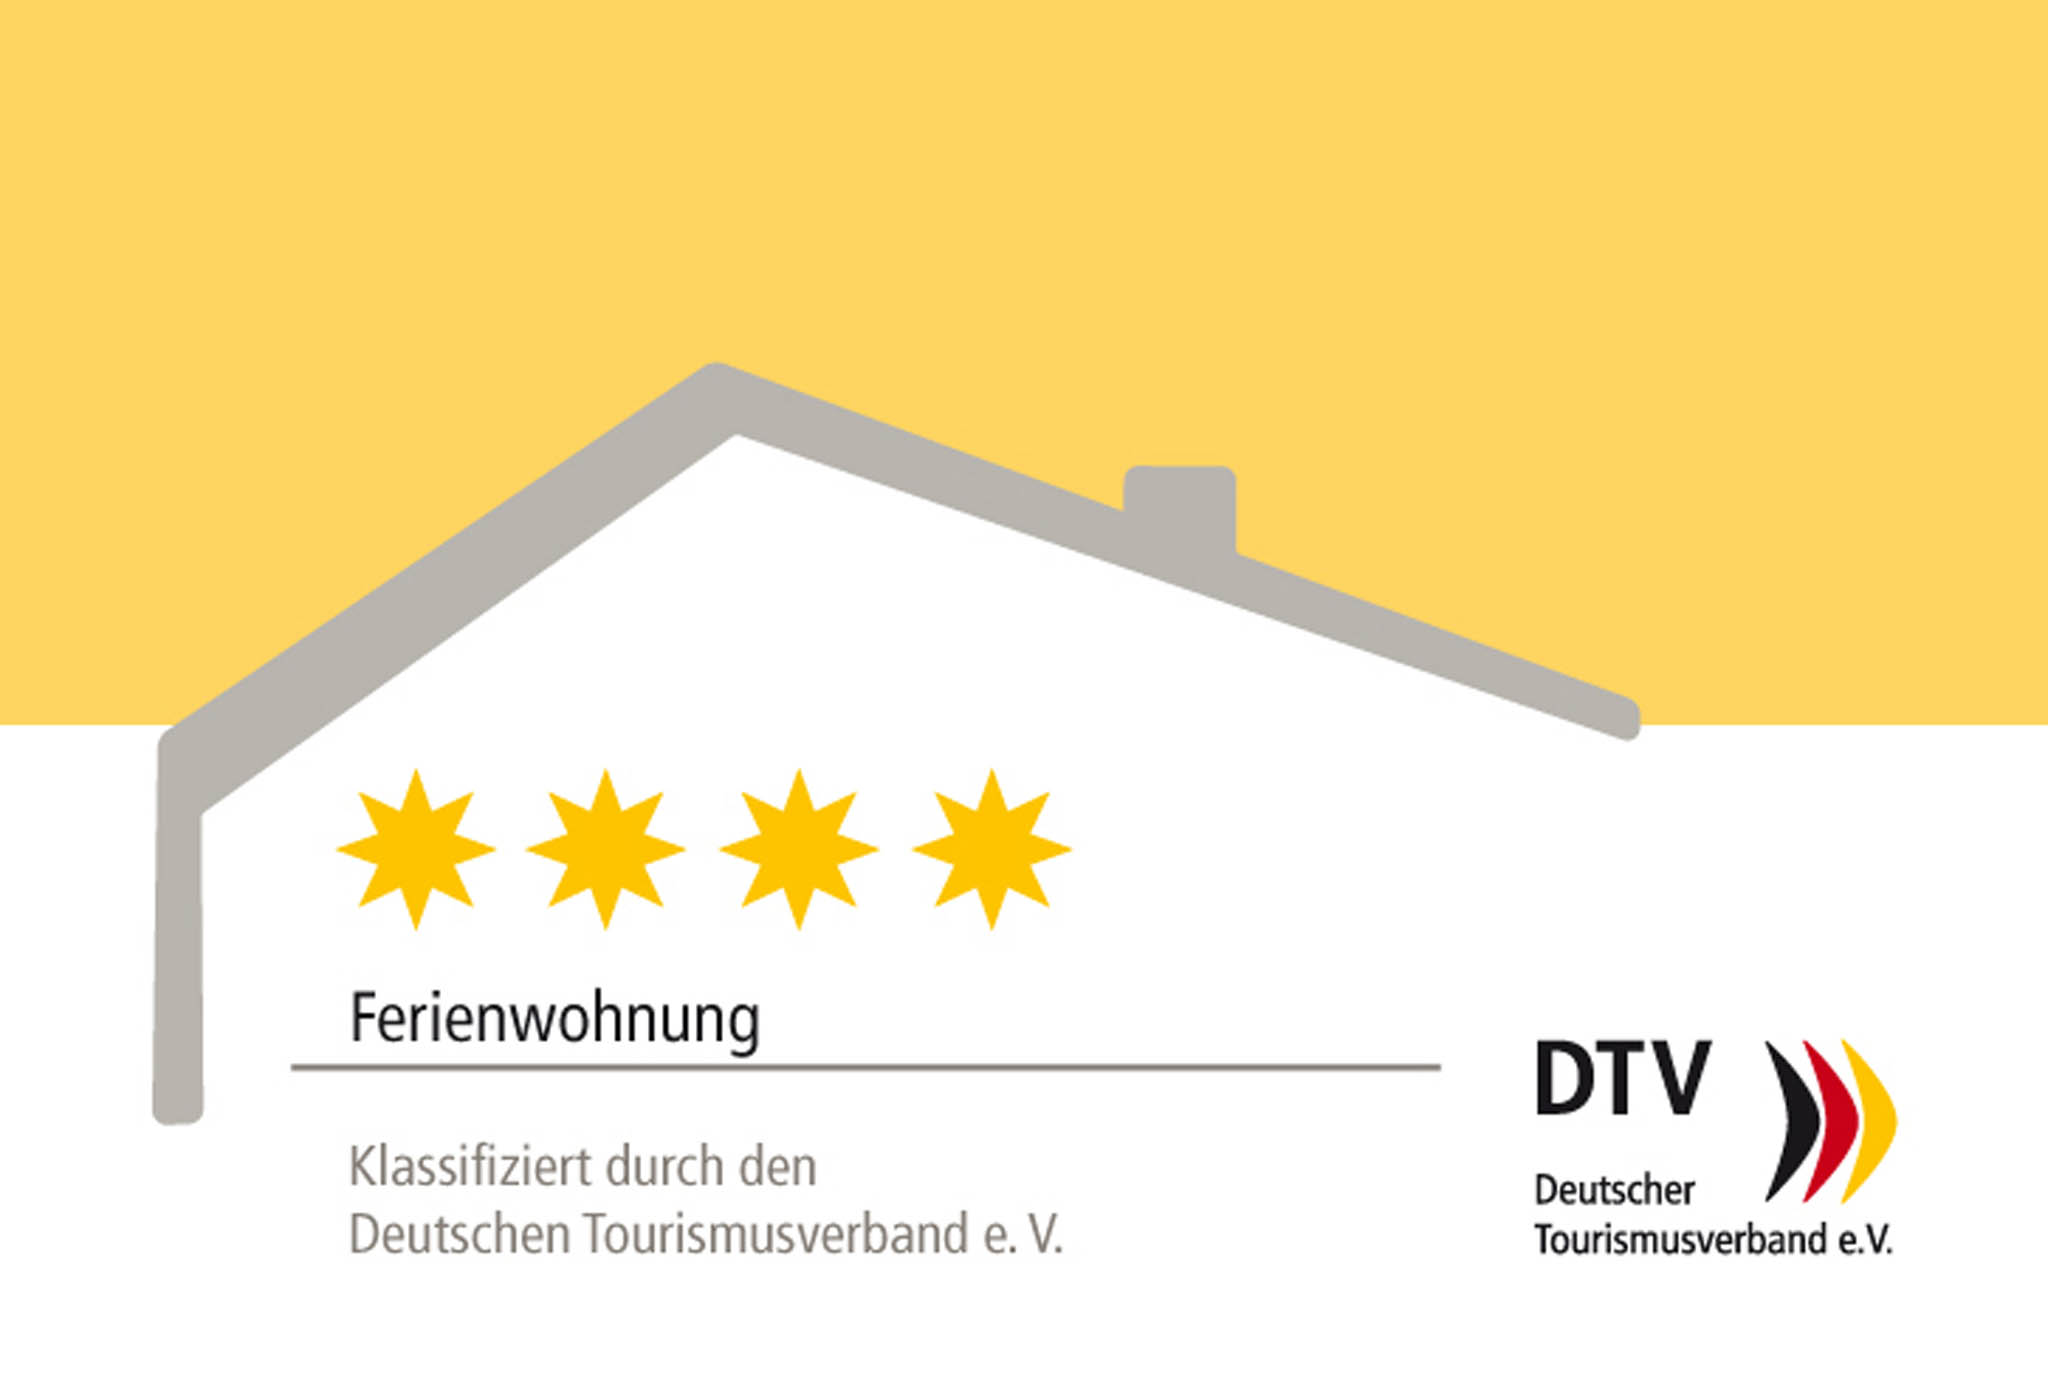 Deutscher Tourismusverband 4 Sterne Auszeichnung für die Ferienwohnung im Ahrtal